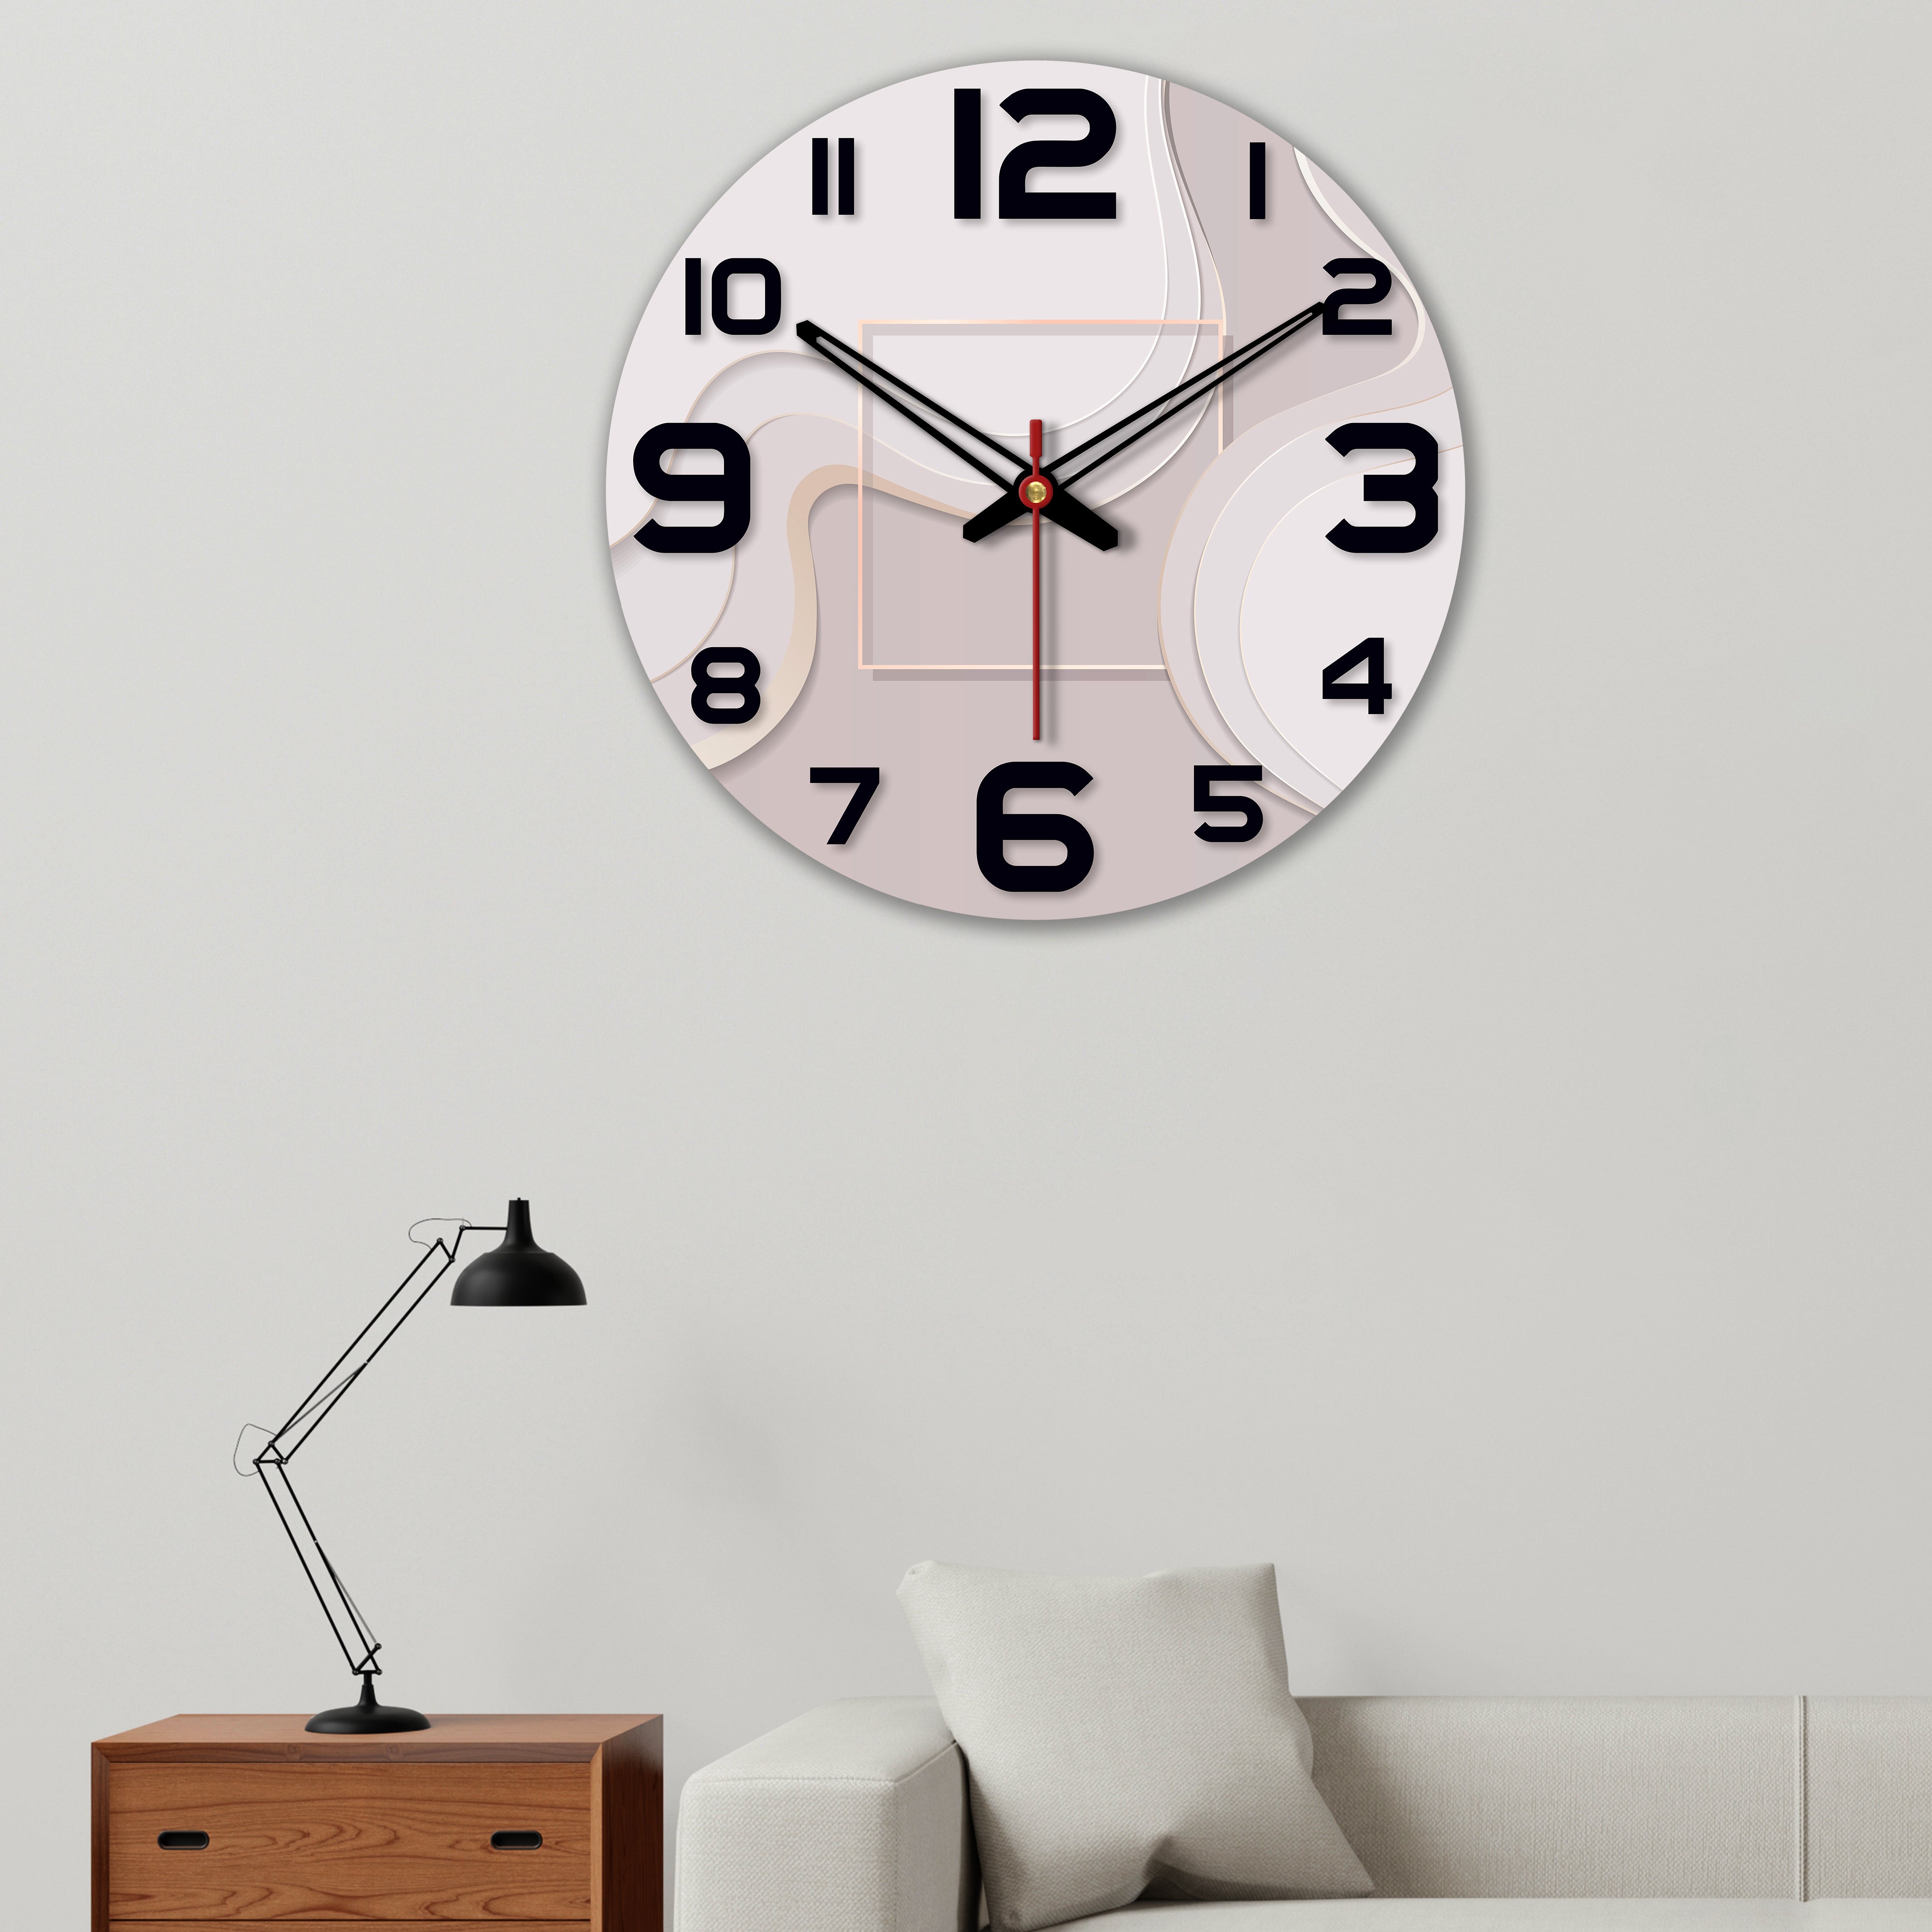 Modern Wavy Pattern Wooden Wall Clock